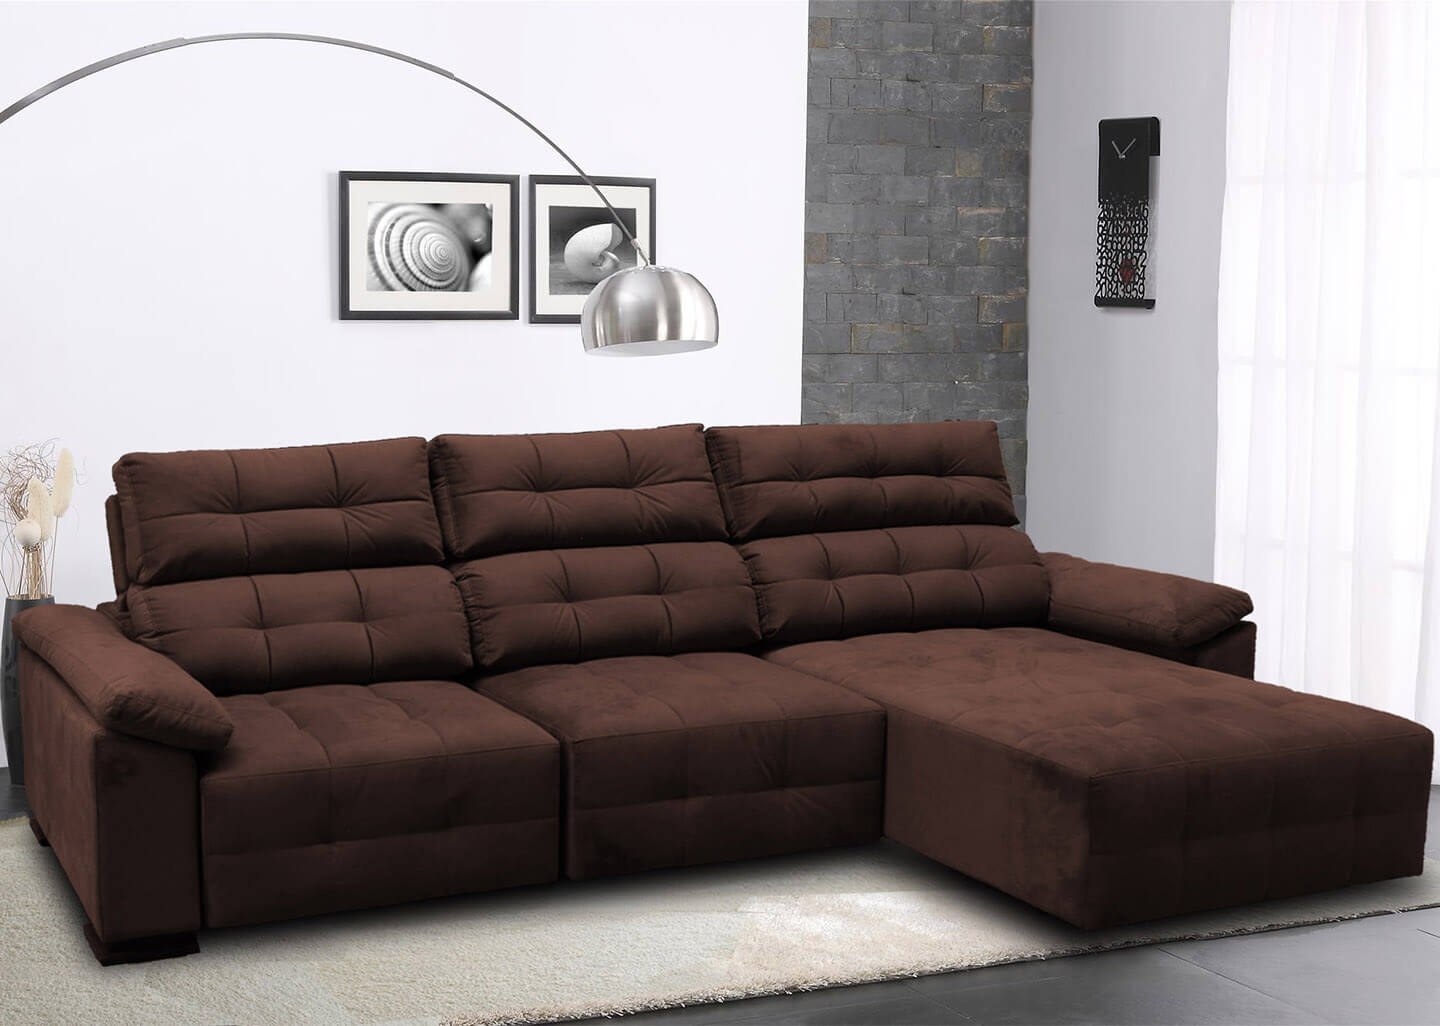 Sofa Retratil 3 Lugares Reclinavel | Awesome Home